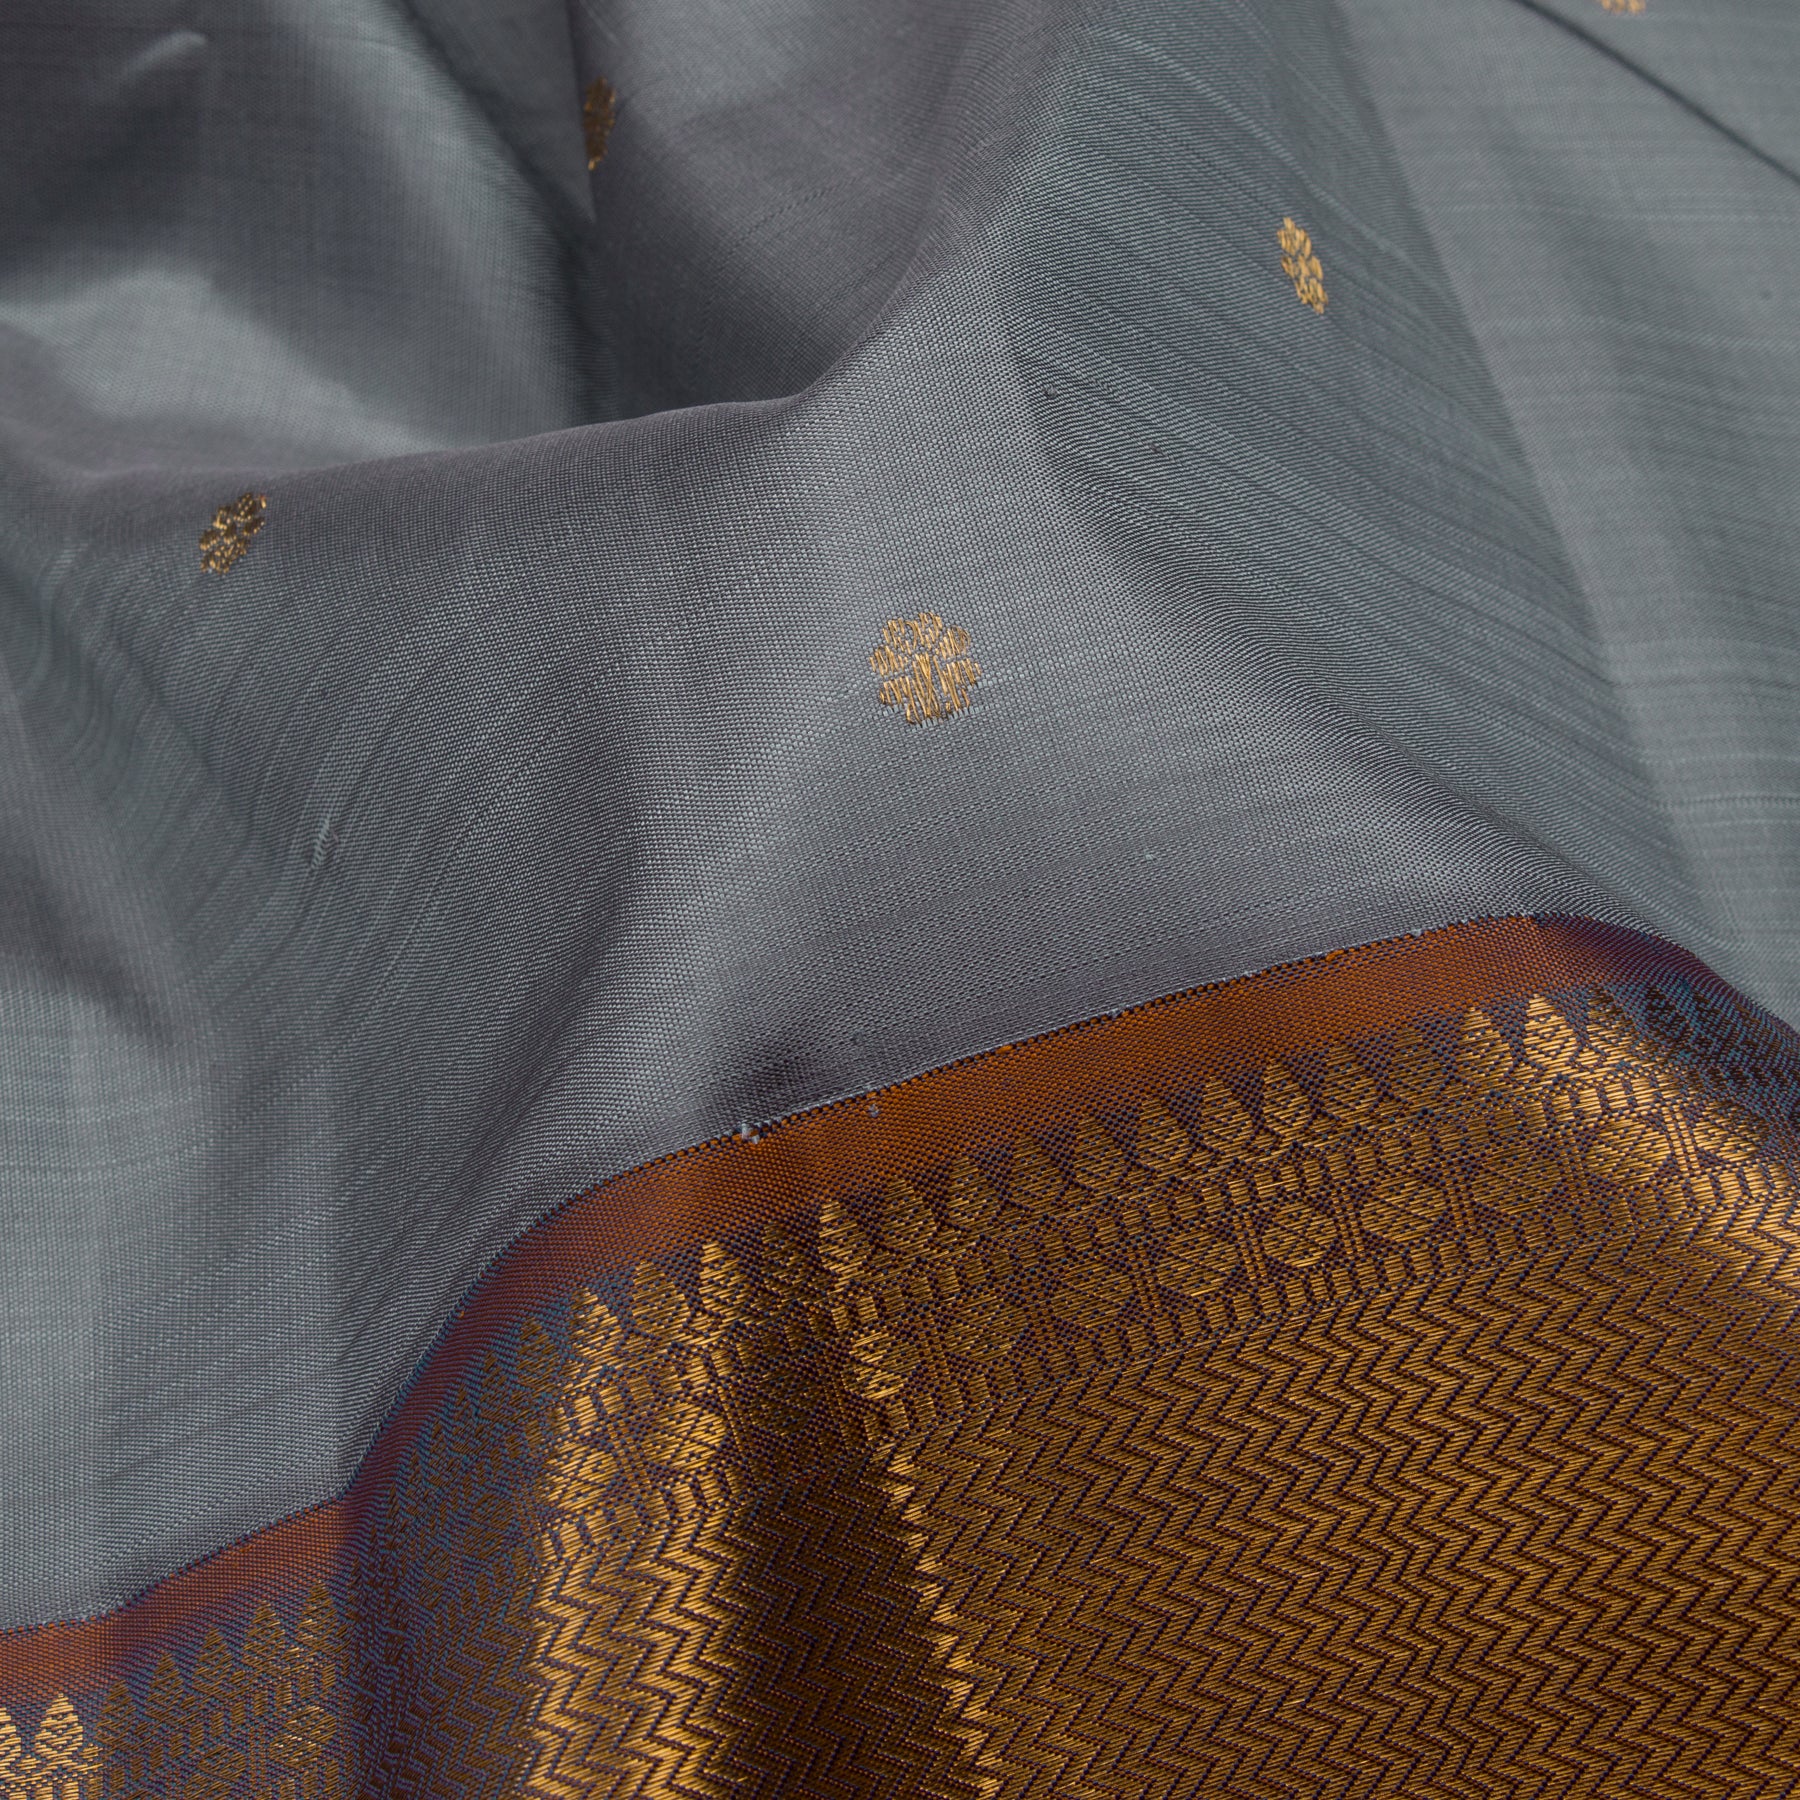 Kanakavalli Kanjivaram Silk Sari 23-611-HS001-11025 - Fabric View